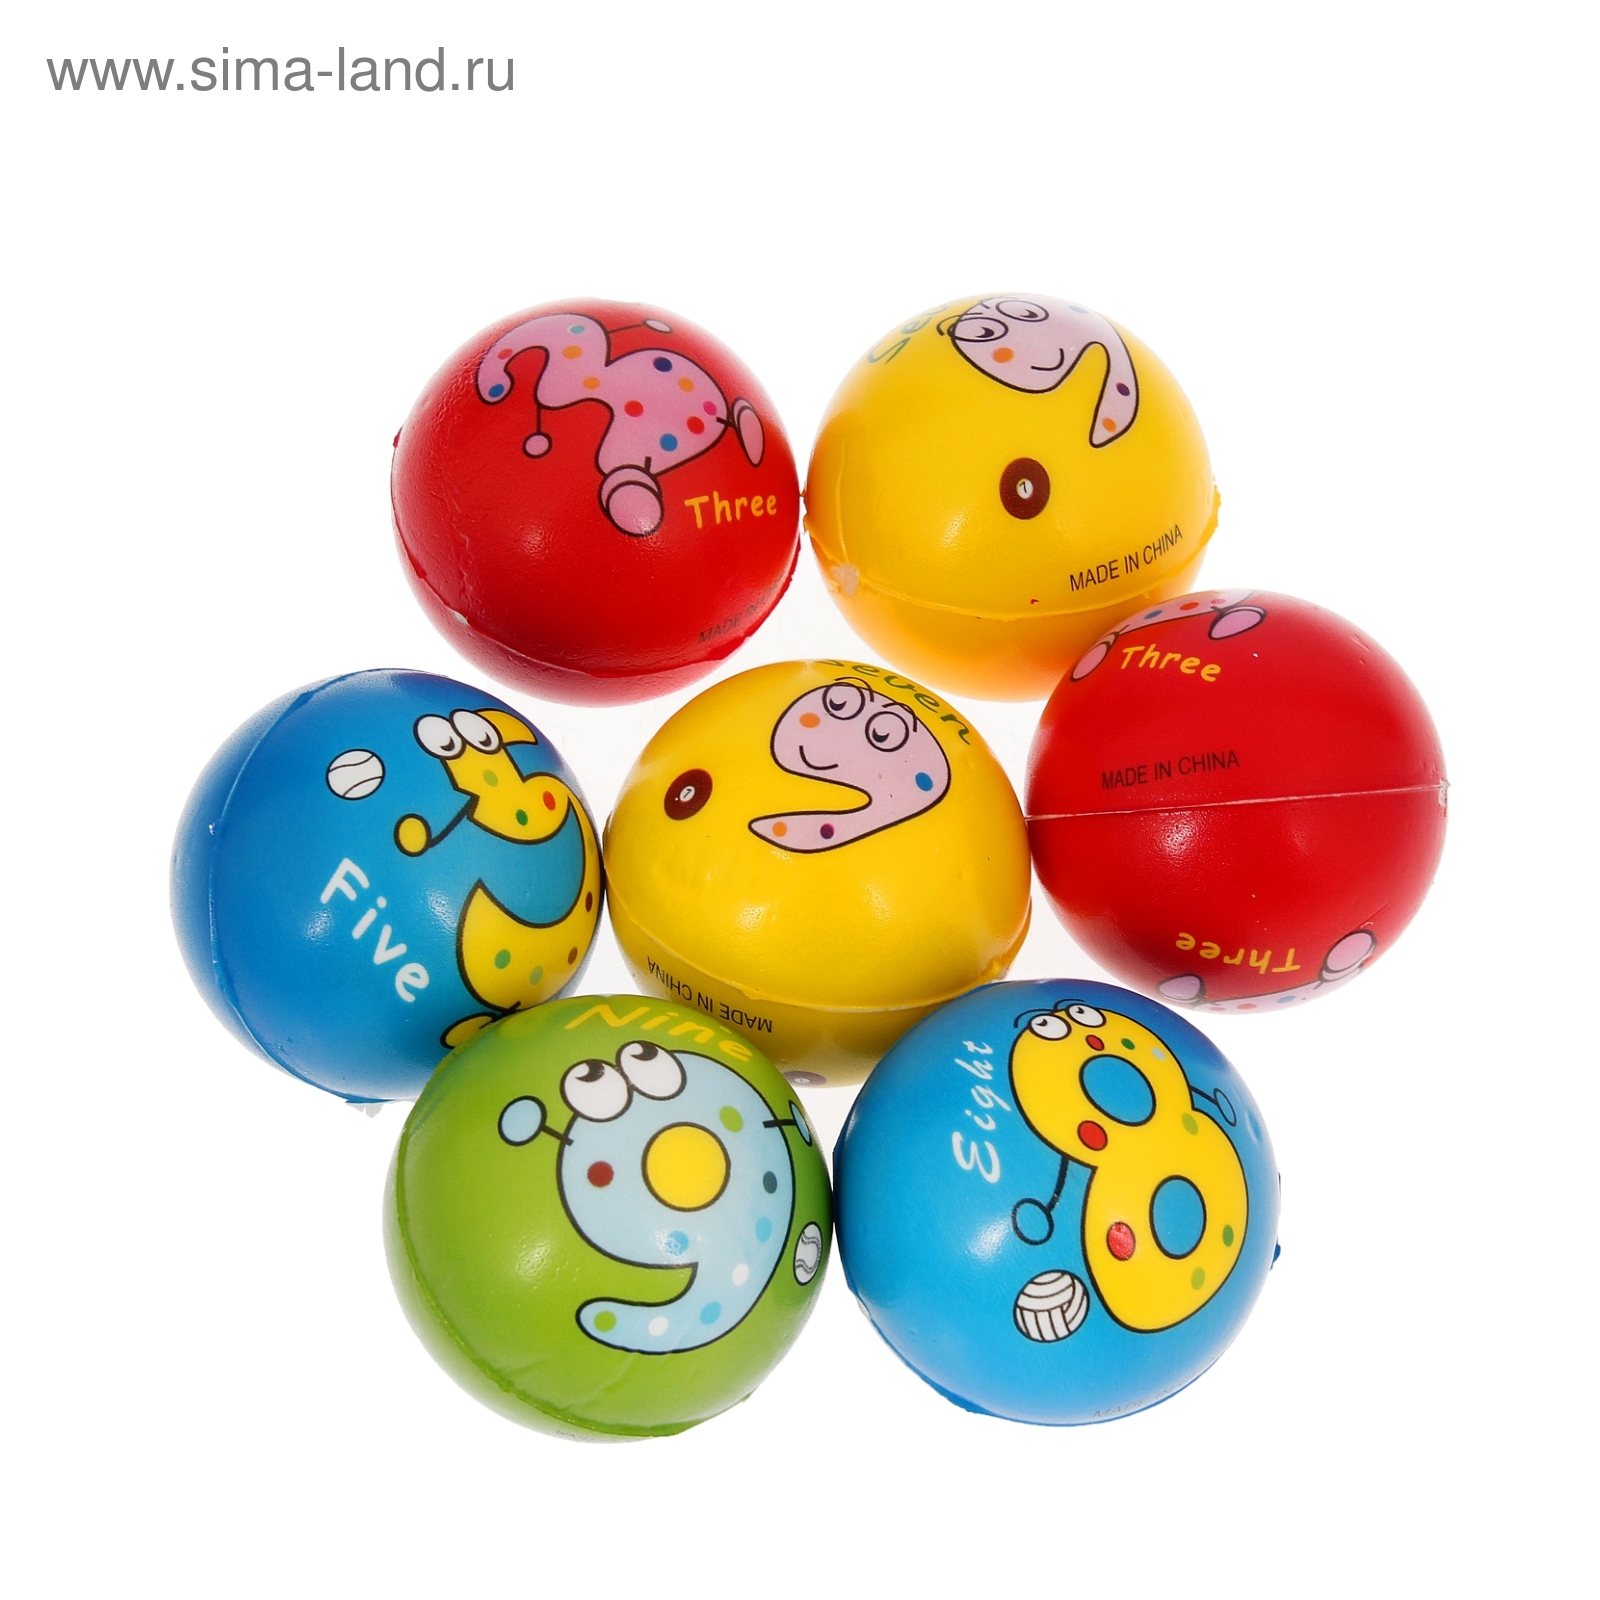 Мягкий мяч "Весёлые животные", цифры, 6,3 см, цвета МИКС